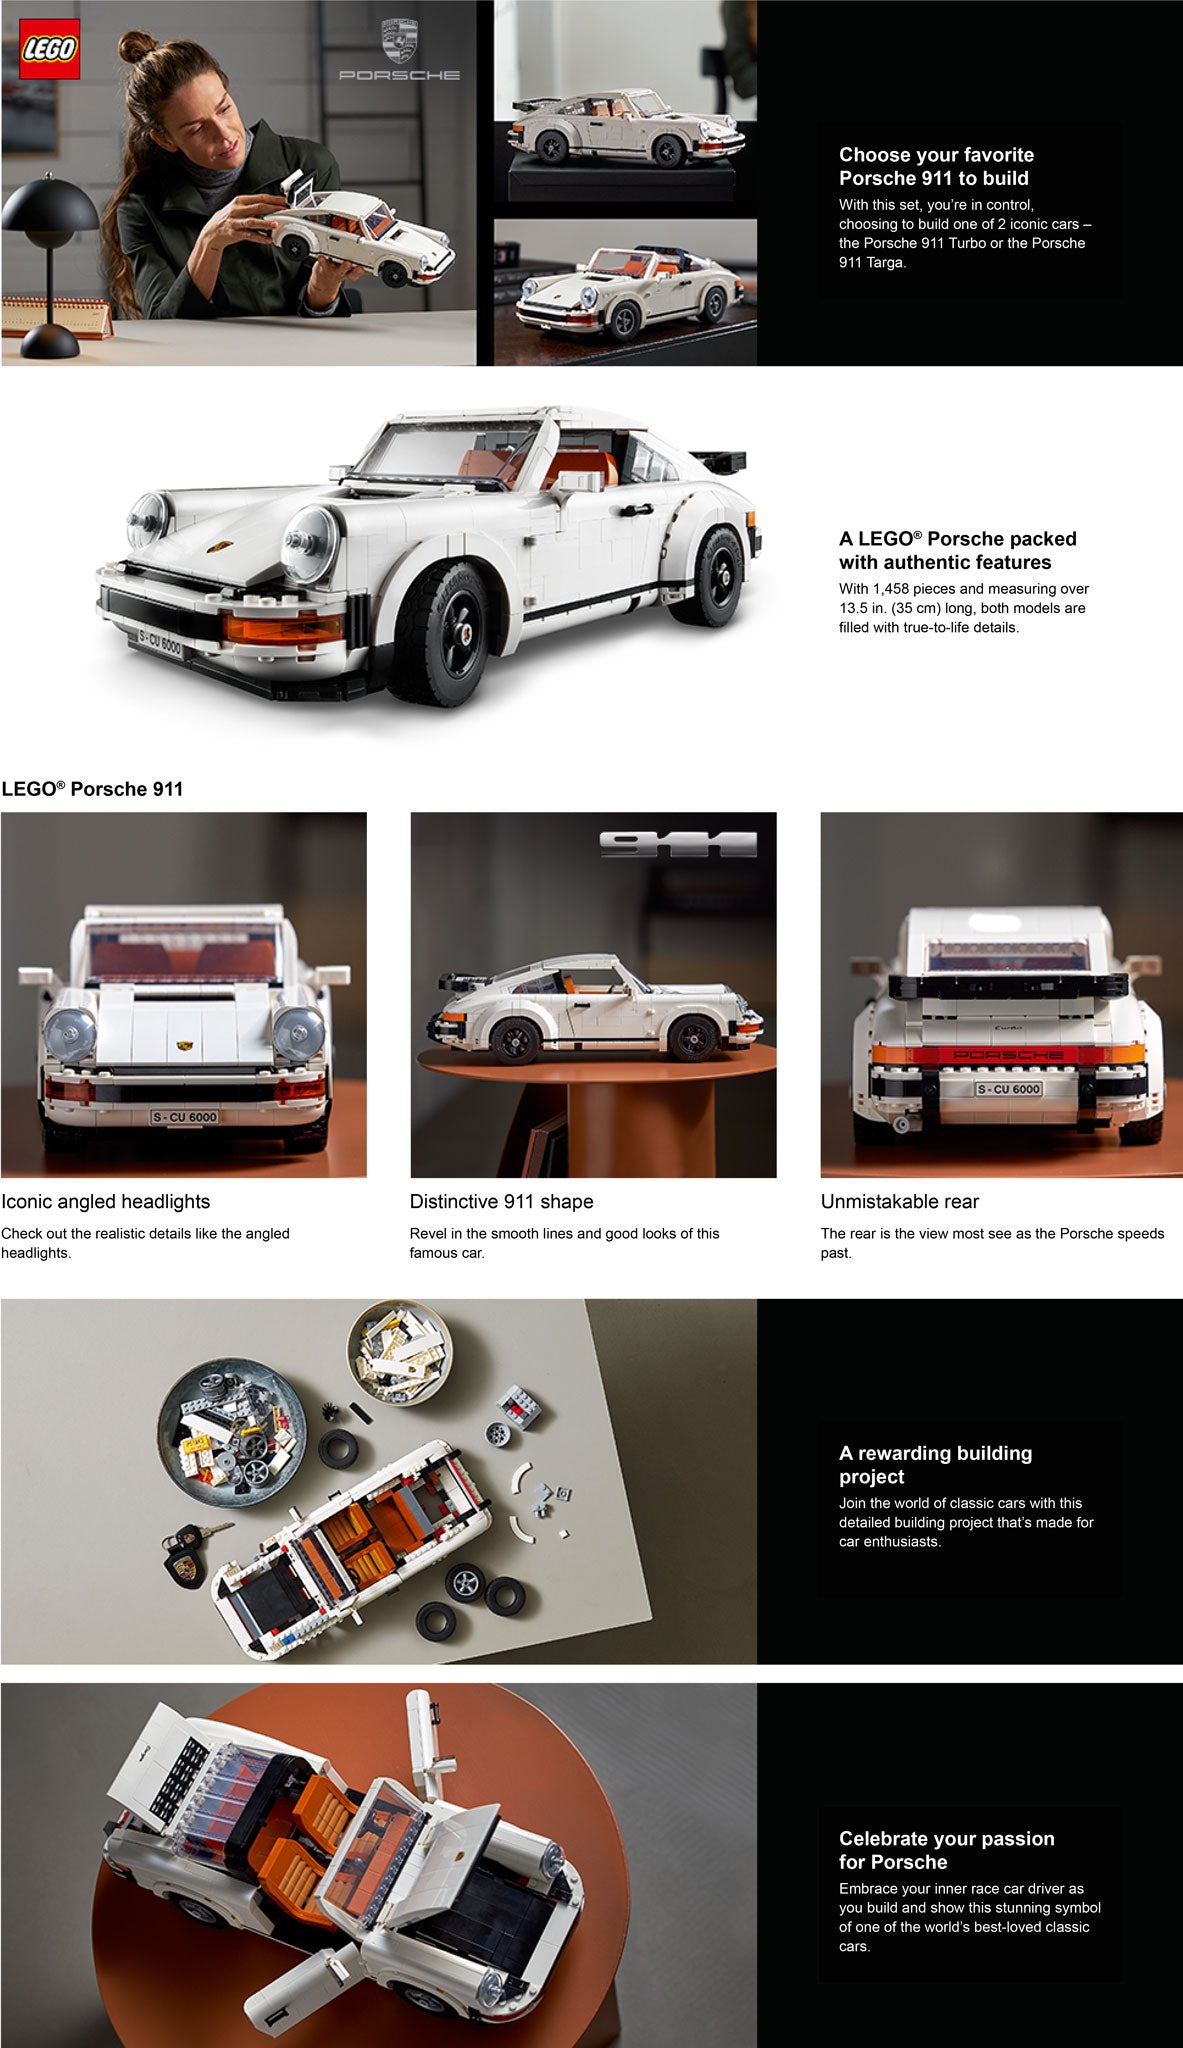 10295 Porsche 911